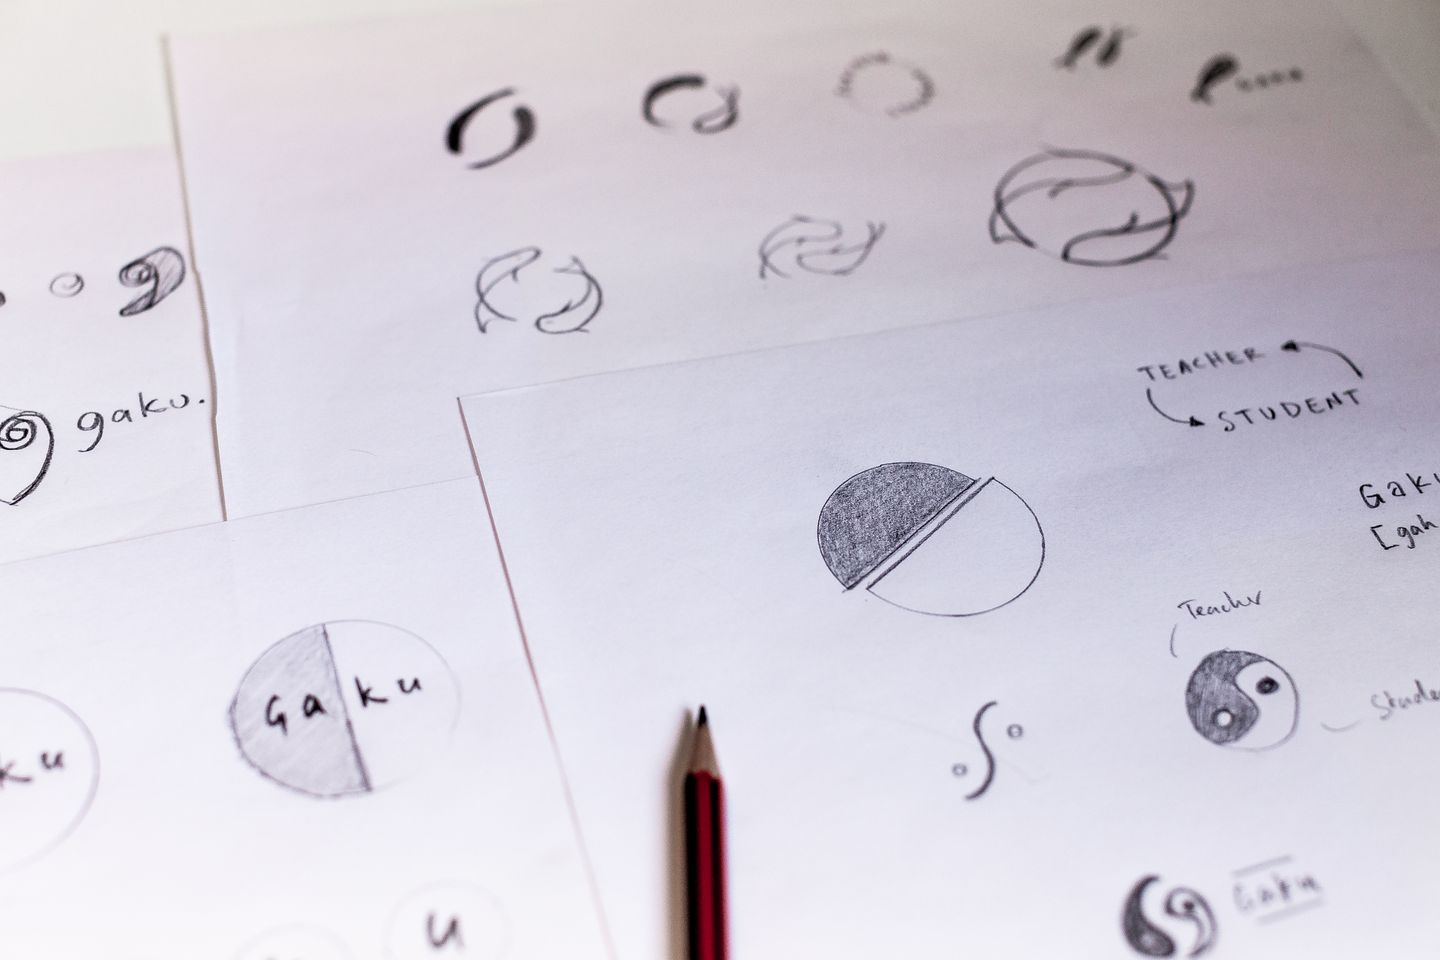 Gaku logo sketches